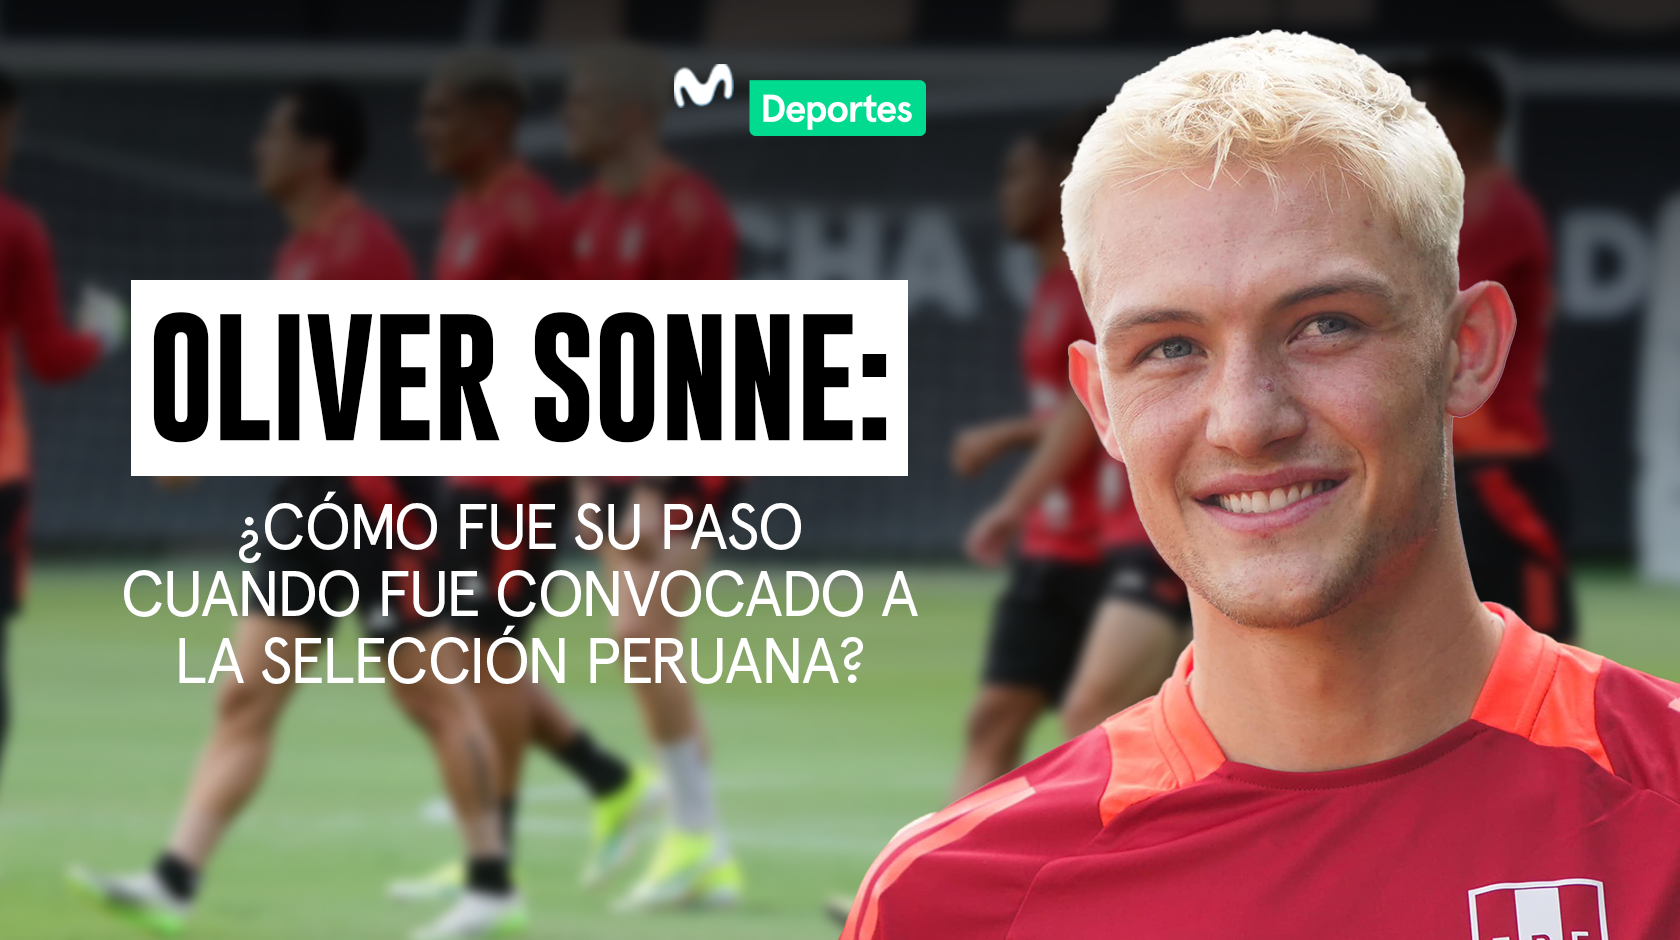 Oliver Sonne: ¿Cómo fue su paso cuando fue convocado a la selección peruana?